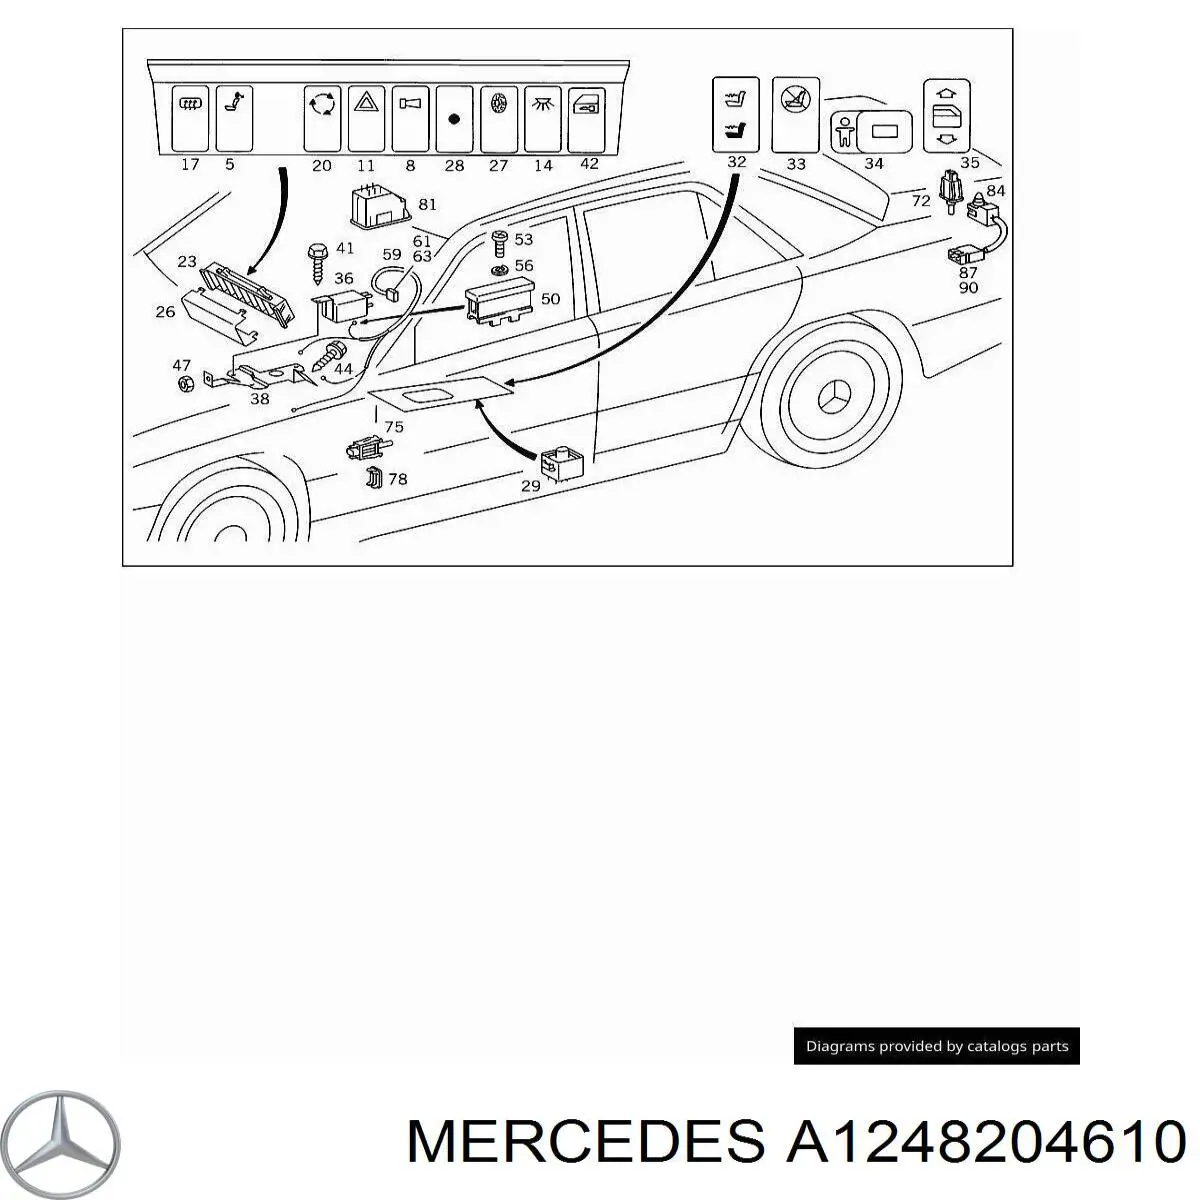 A1248204610 Mercedes botón de encendido, motor eléctrico, elevalunas, puerta delantera izquierda